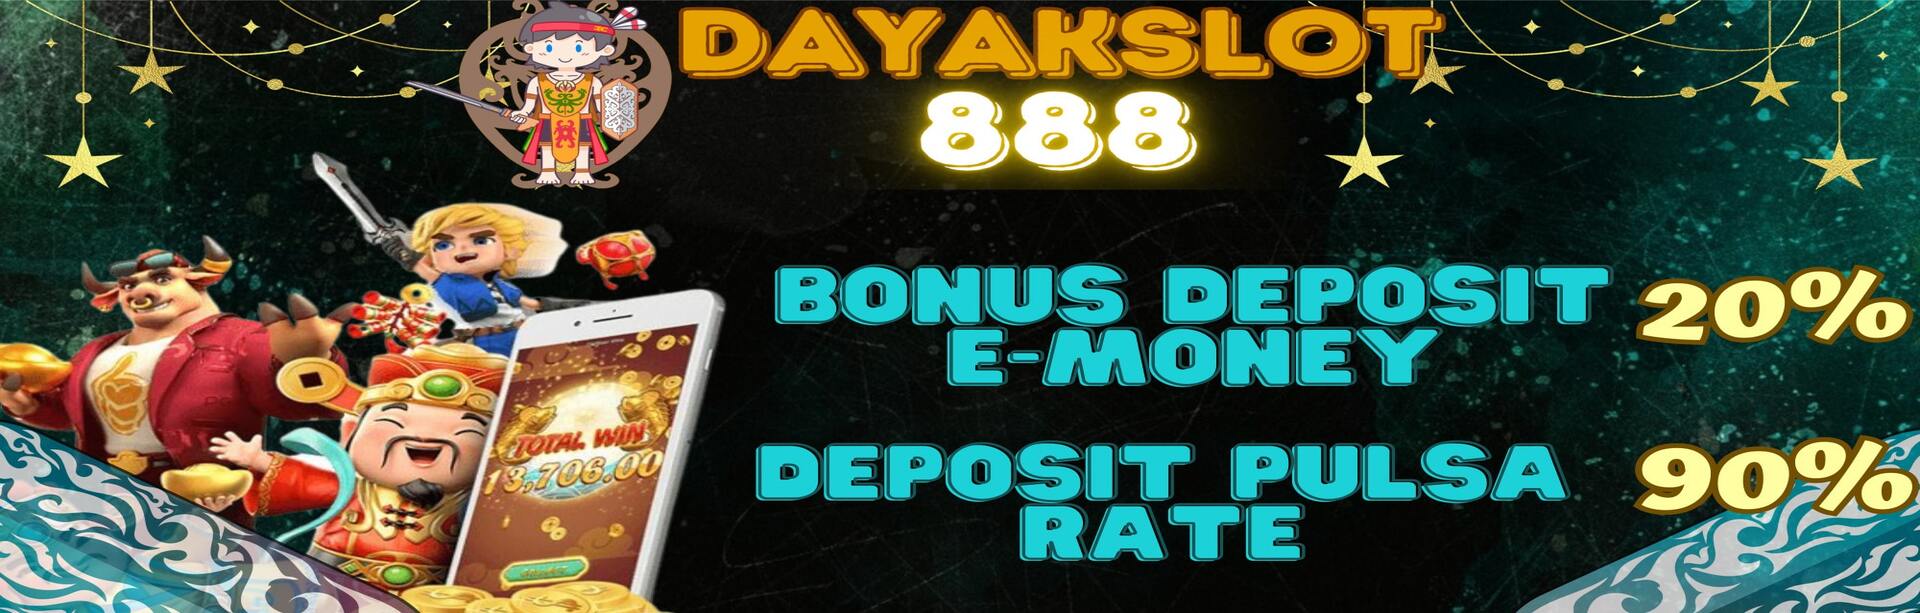 Bonus Deposit E-Money & Pulsa